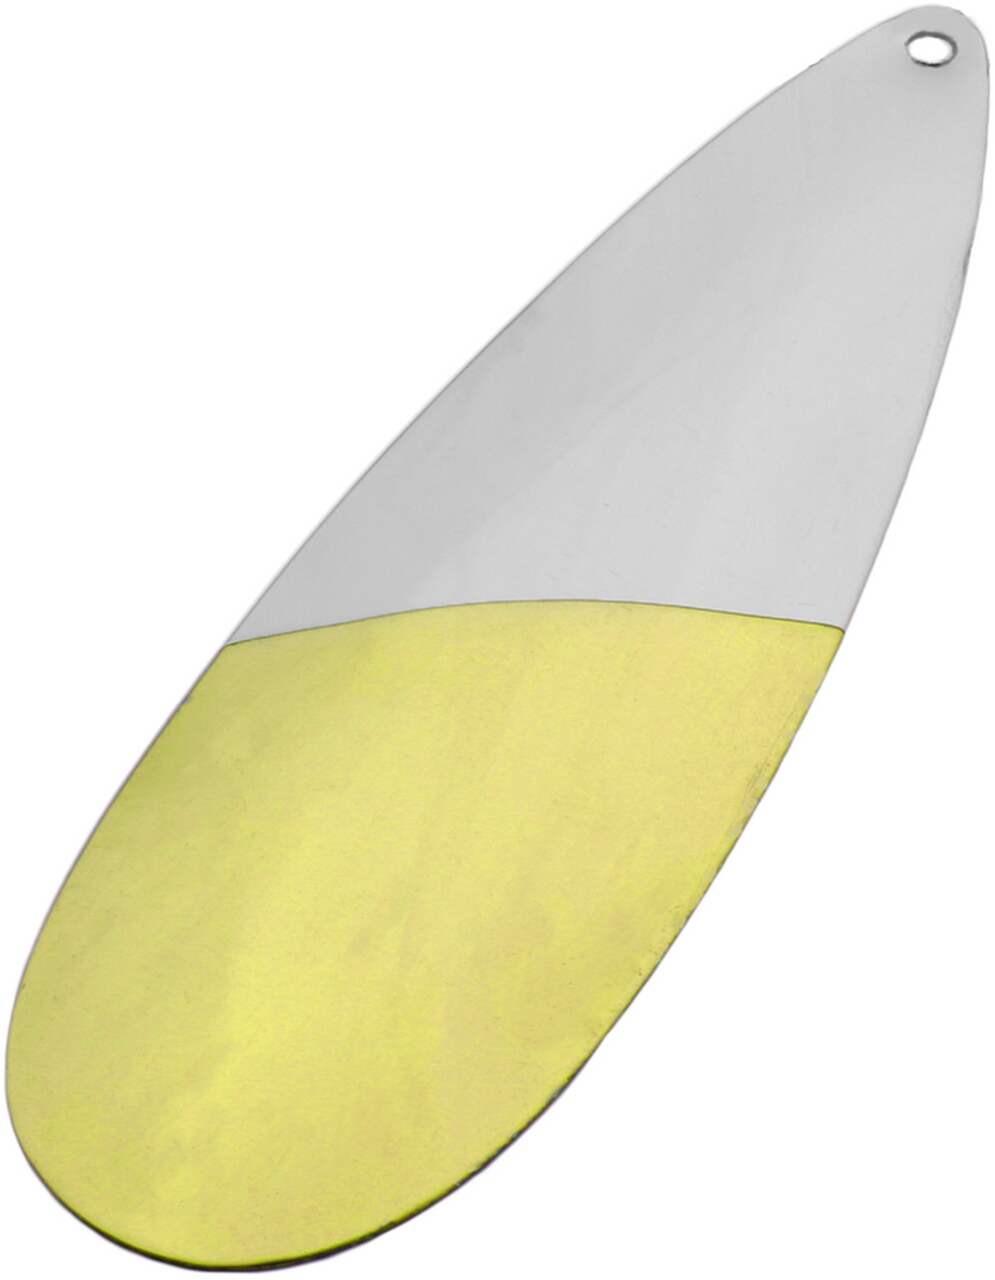 Gibbs Delta Cowichan Spoon, 50/50 Nickel/Brass, Size 4